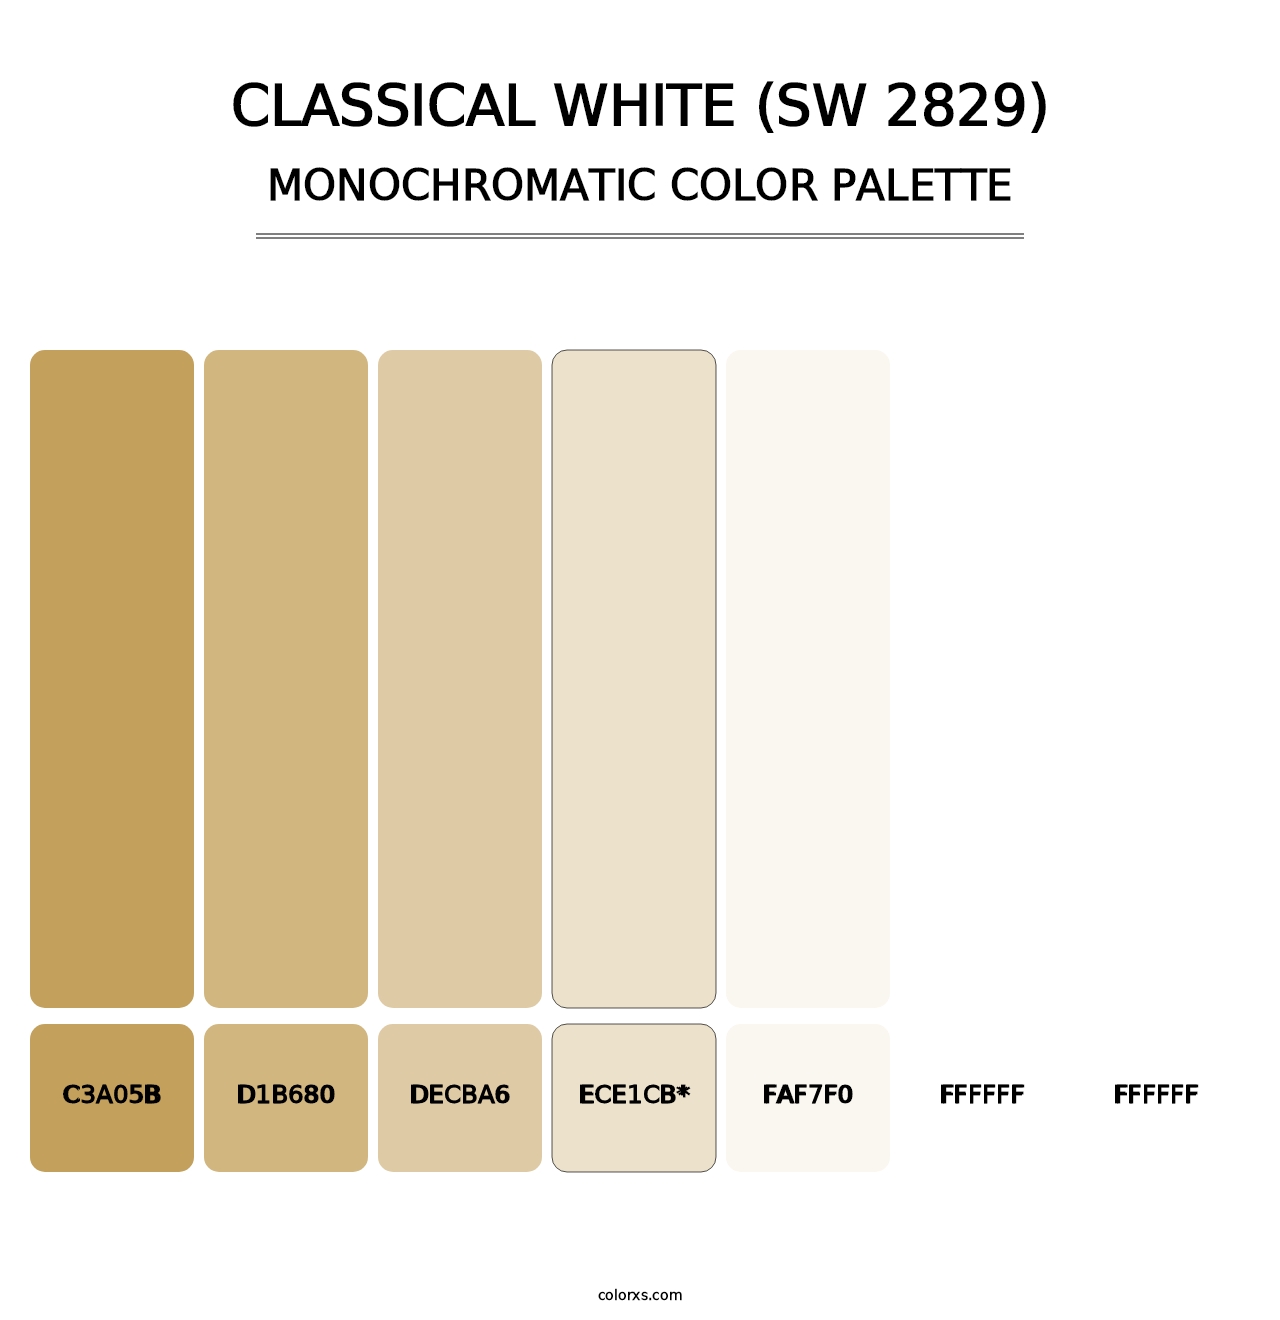 Classical White (SW 2829) - Monochromatic Color Palette